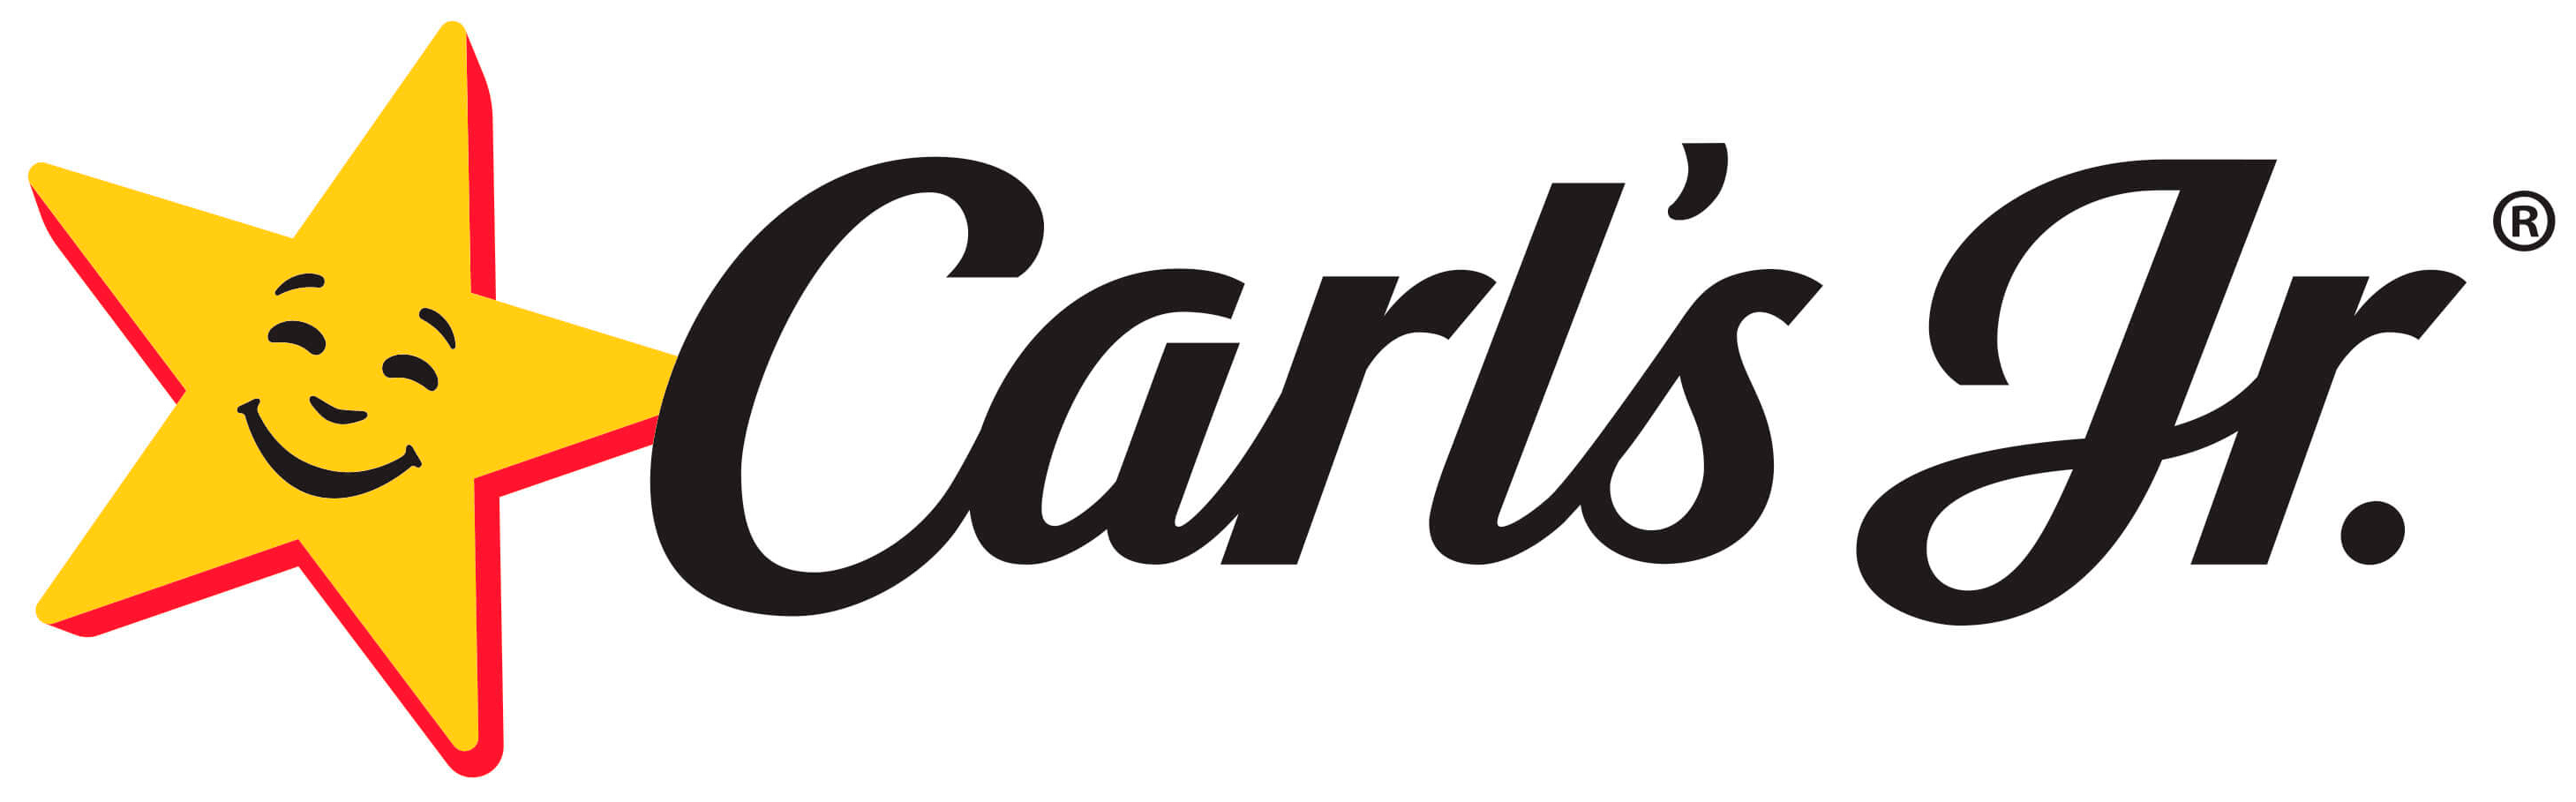 Carl's Jr. - Клиенты Digital INSIGHT